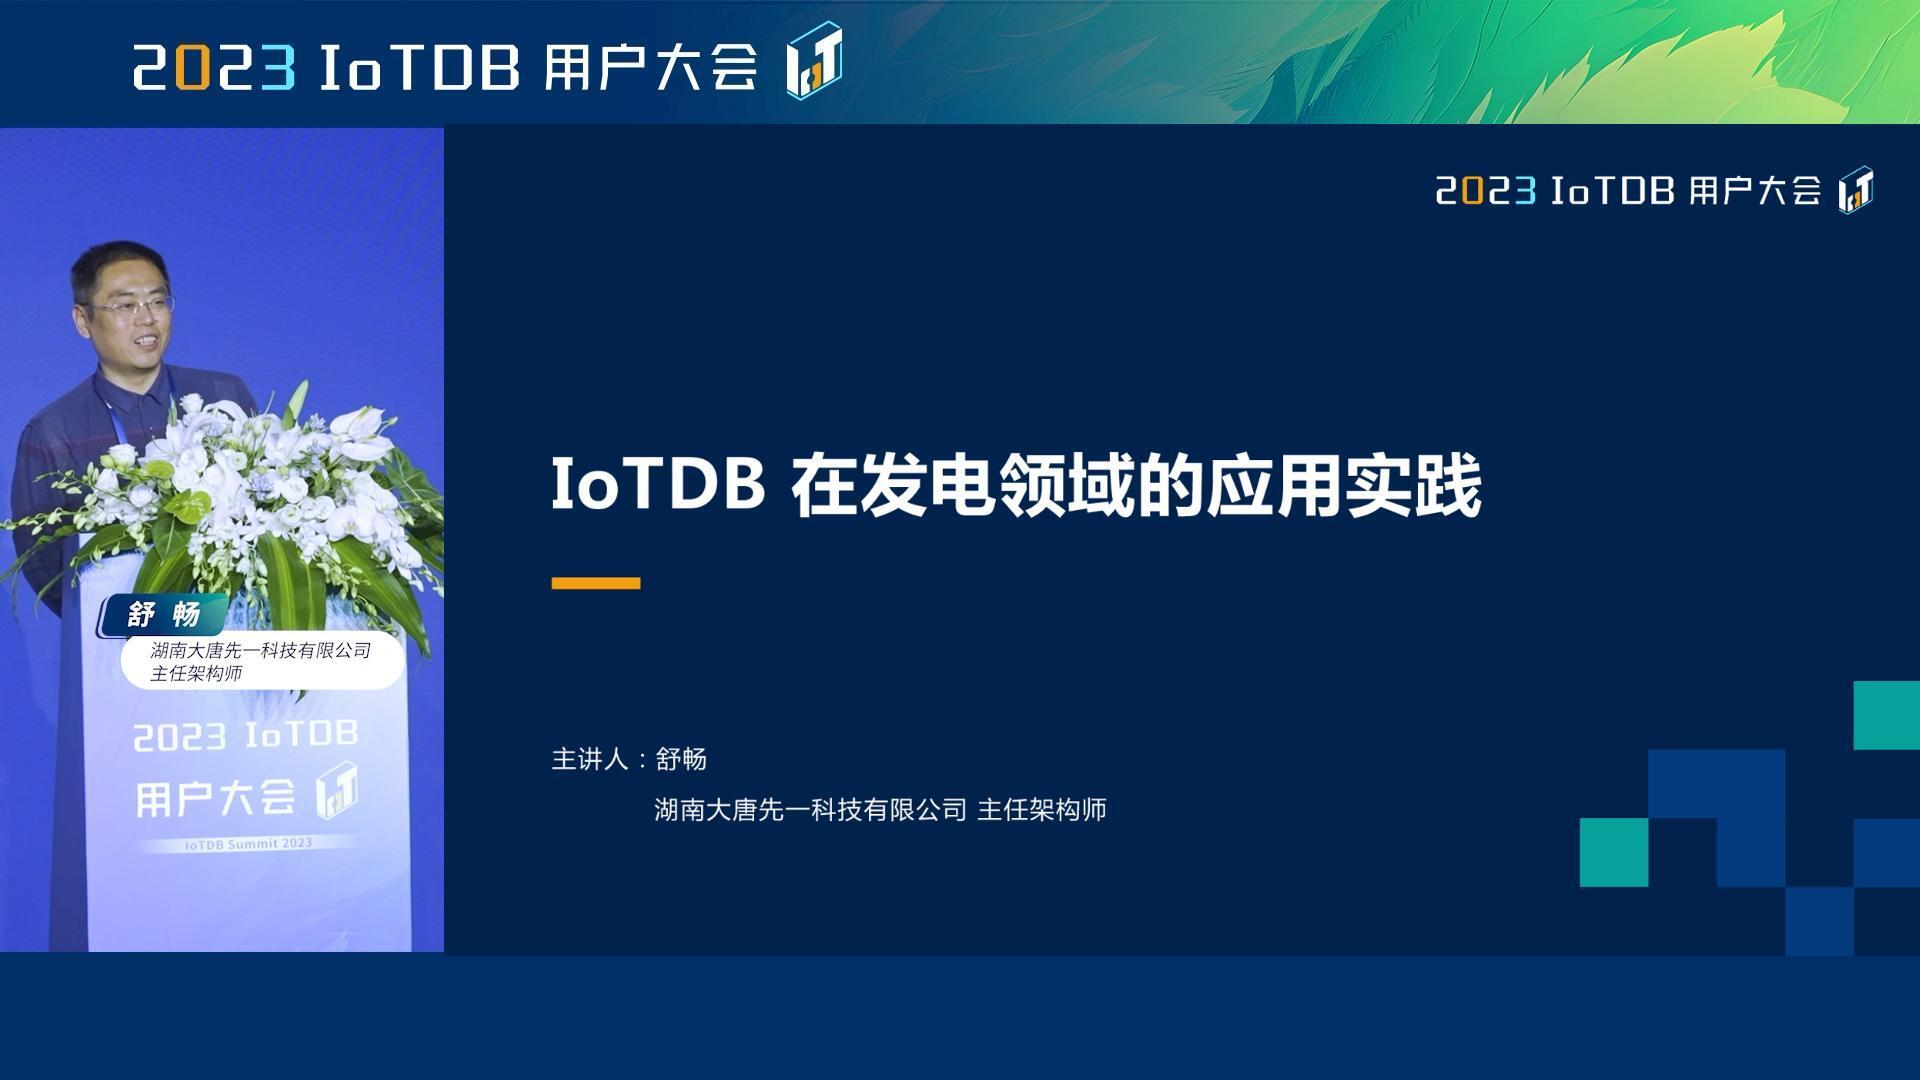 2023 IoTDB Summit：湖南大唐先一科技有限公司主任架构师舒畅《IoTDB 在发电领域的应用实践》